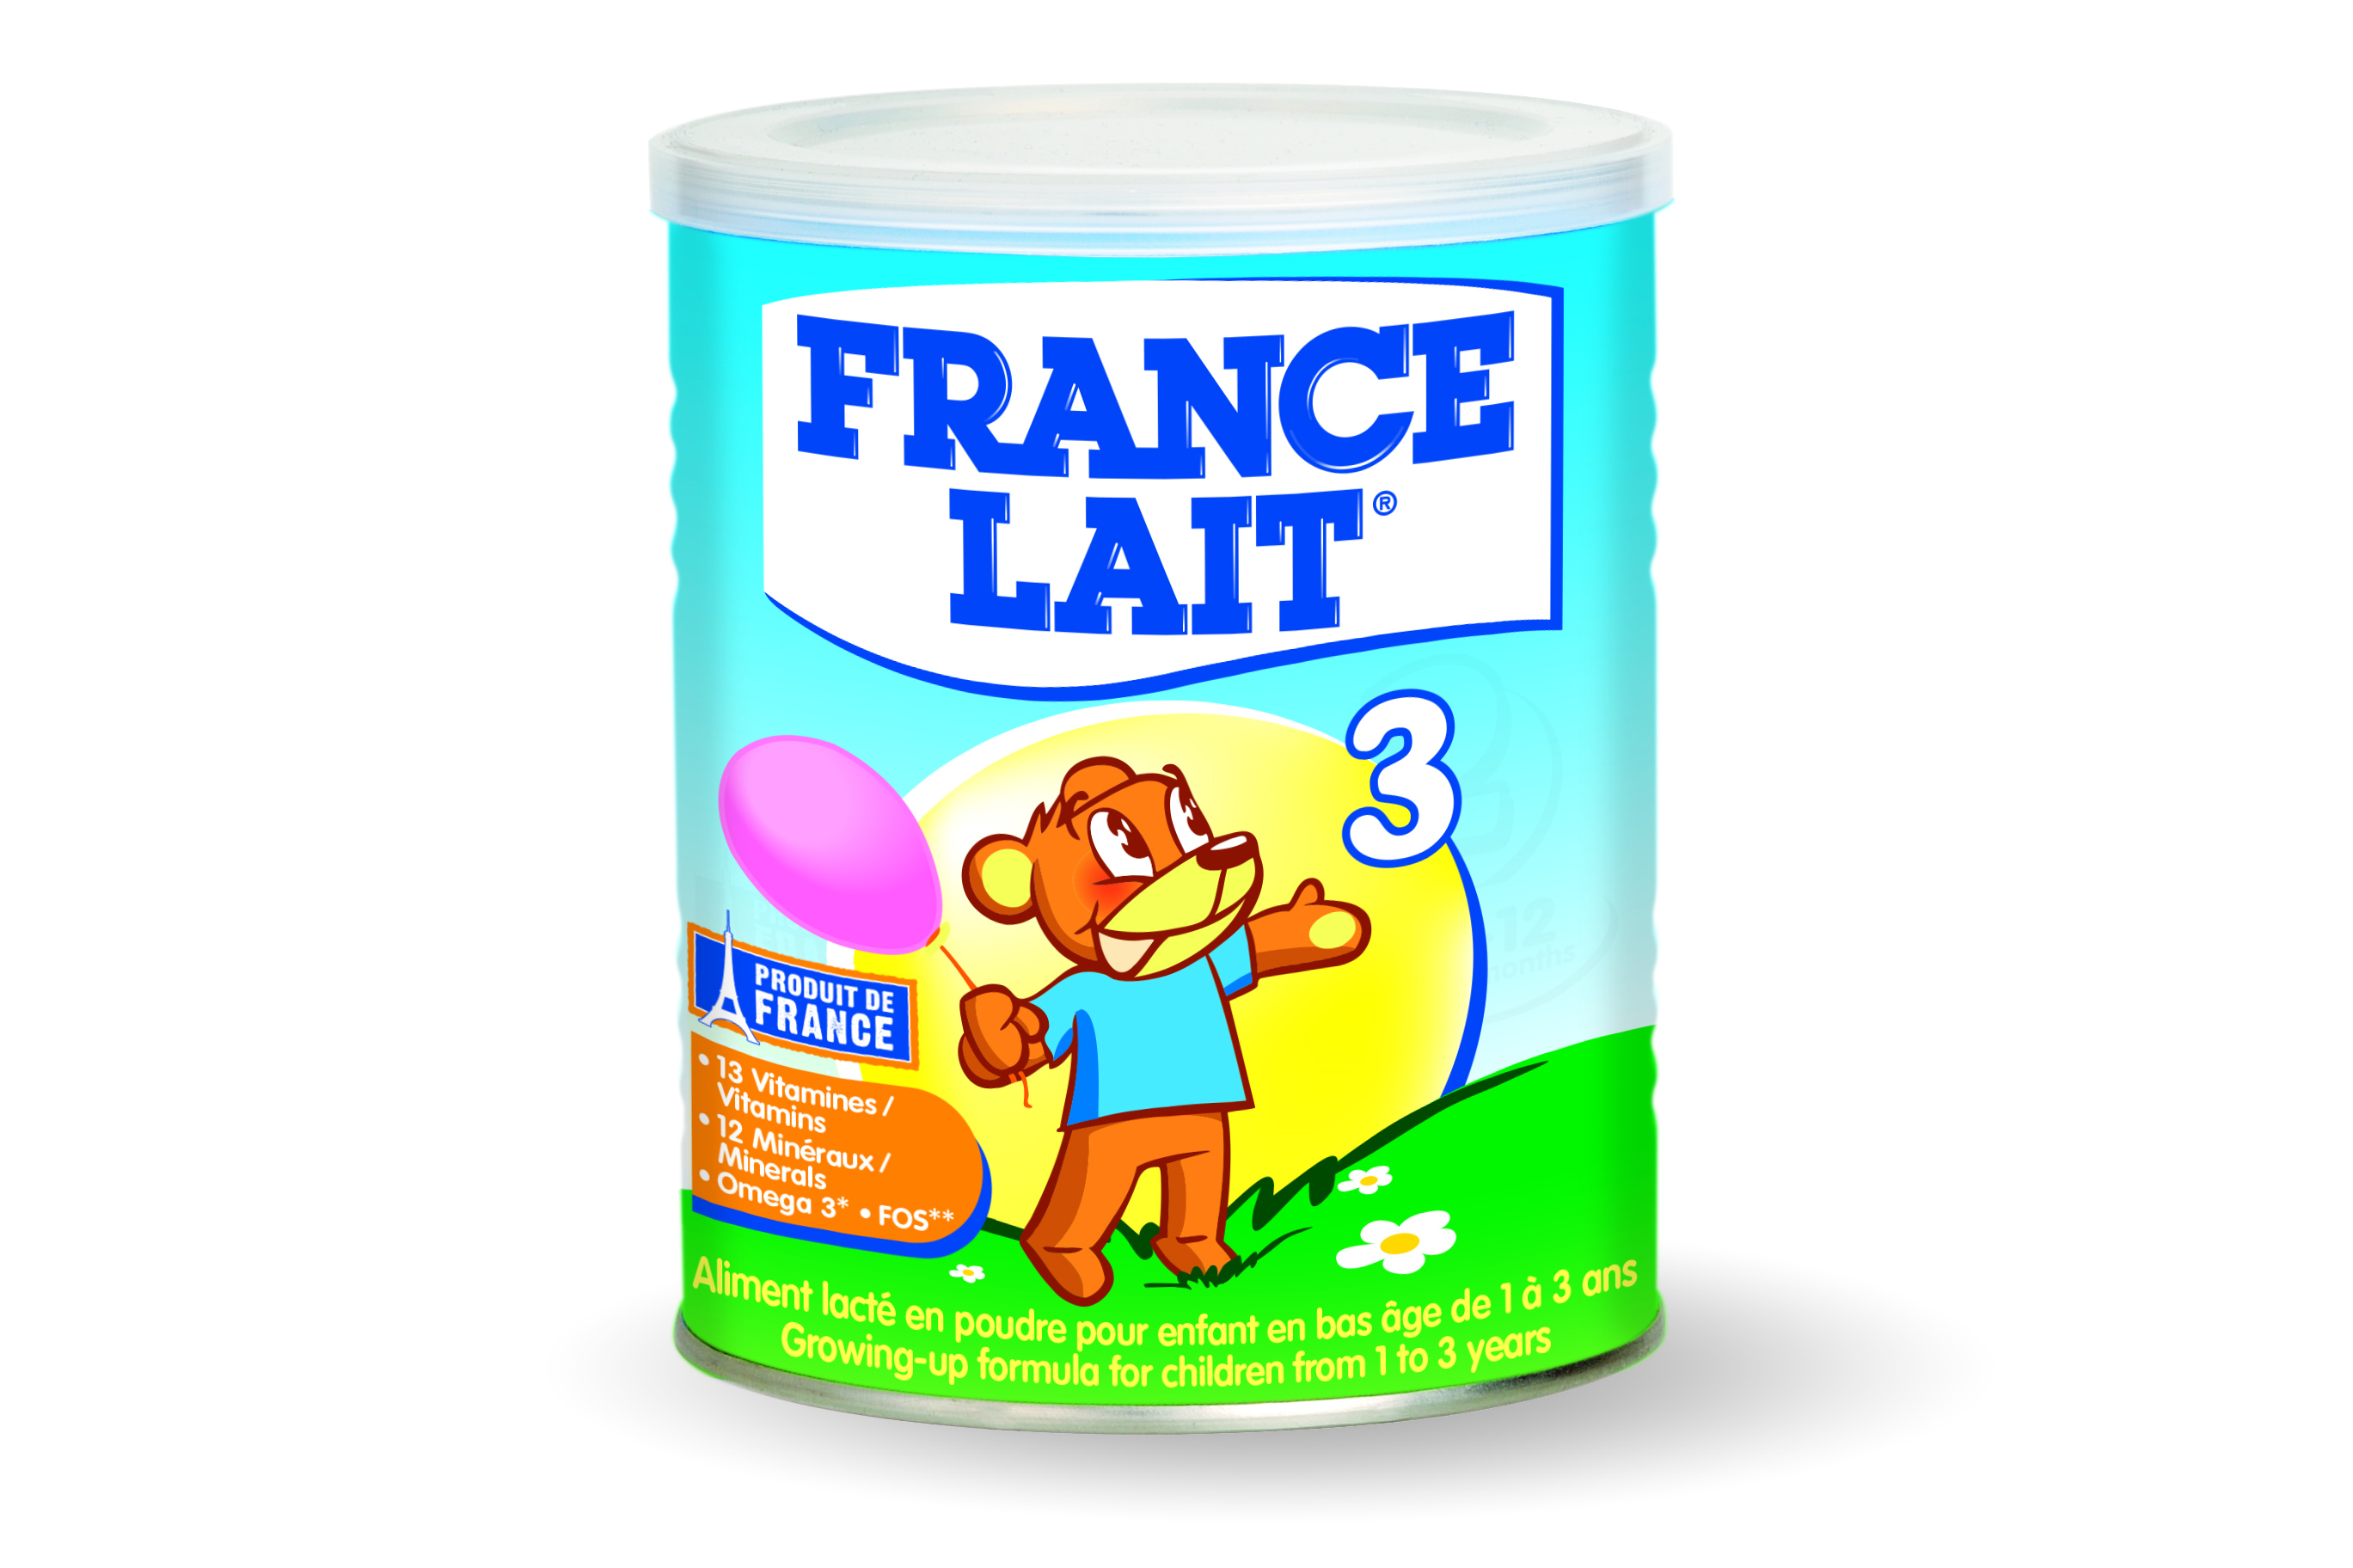 Sữa France Lait 3